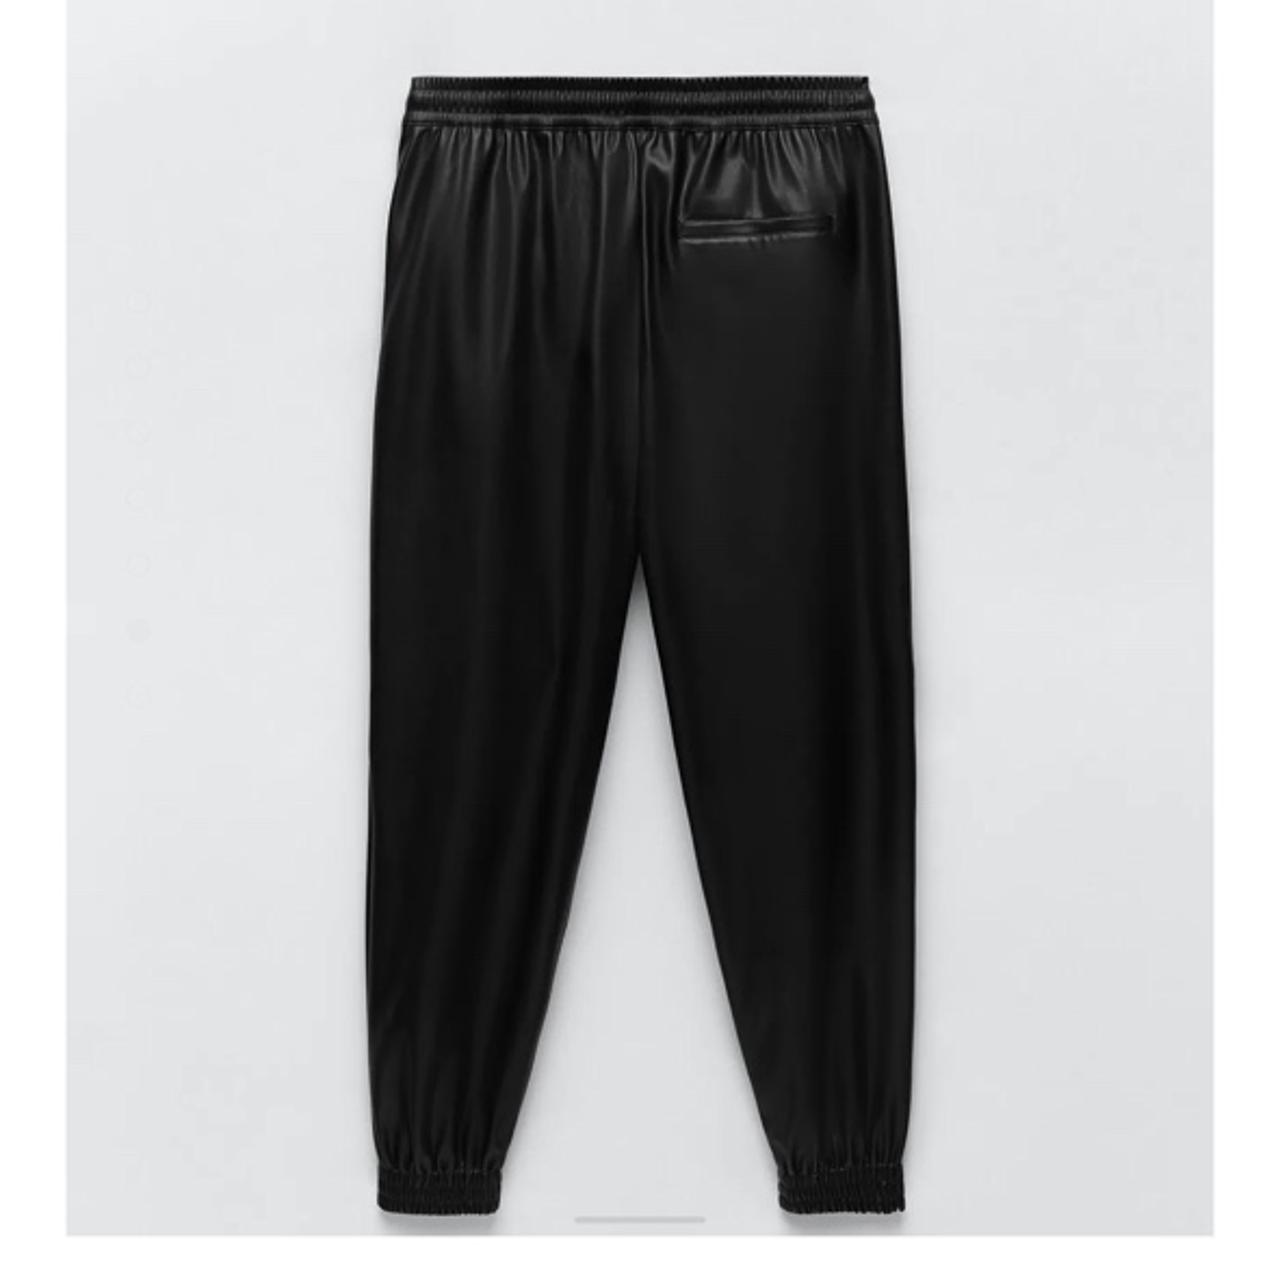 Zara Women's Trousers (4)